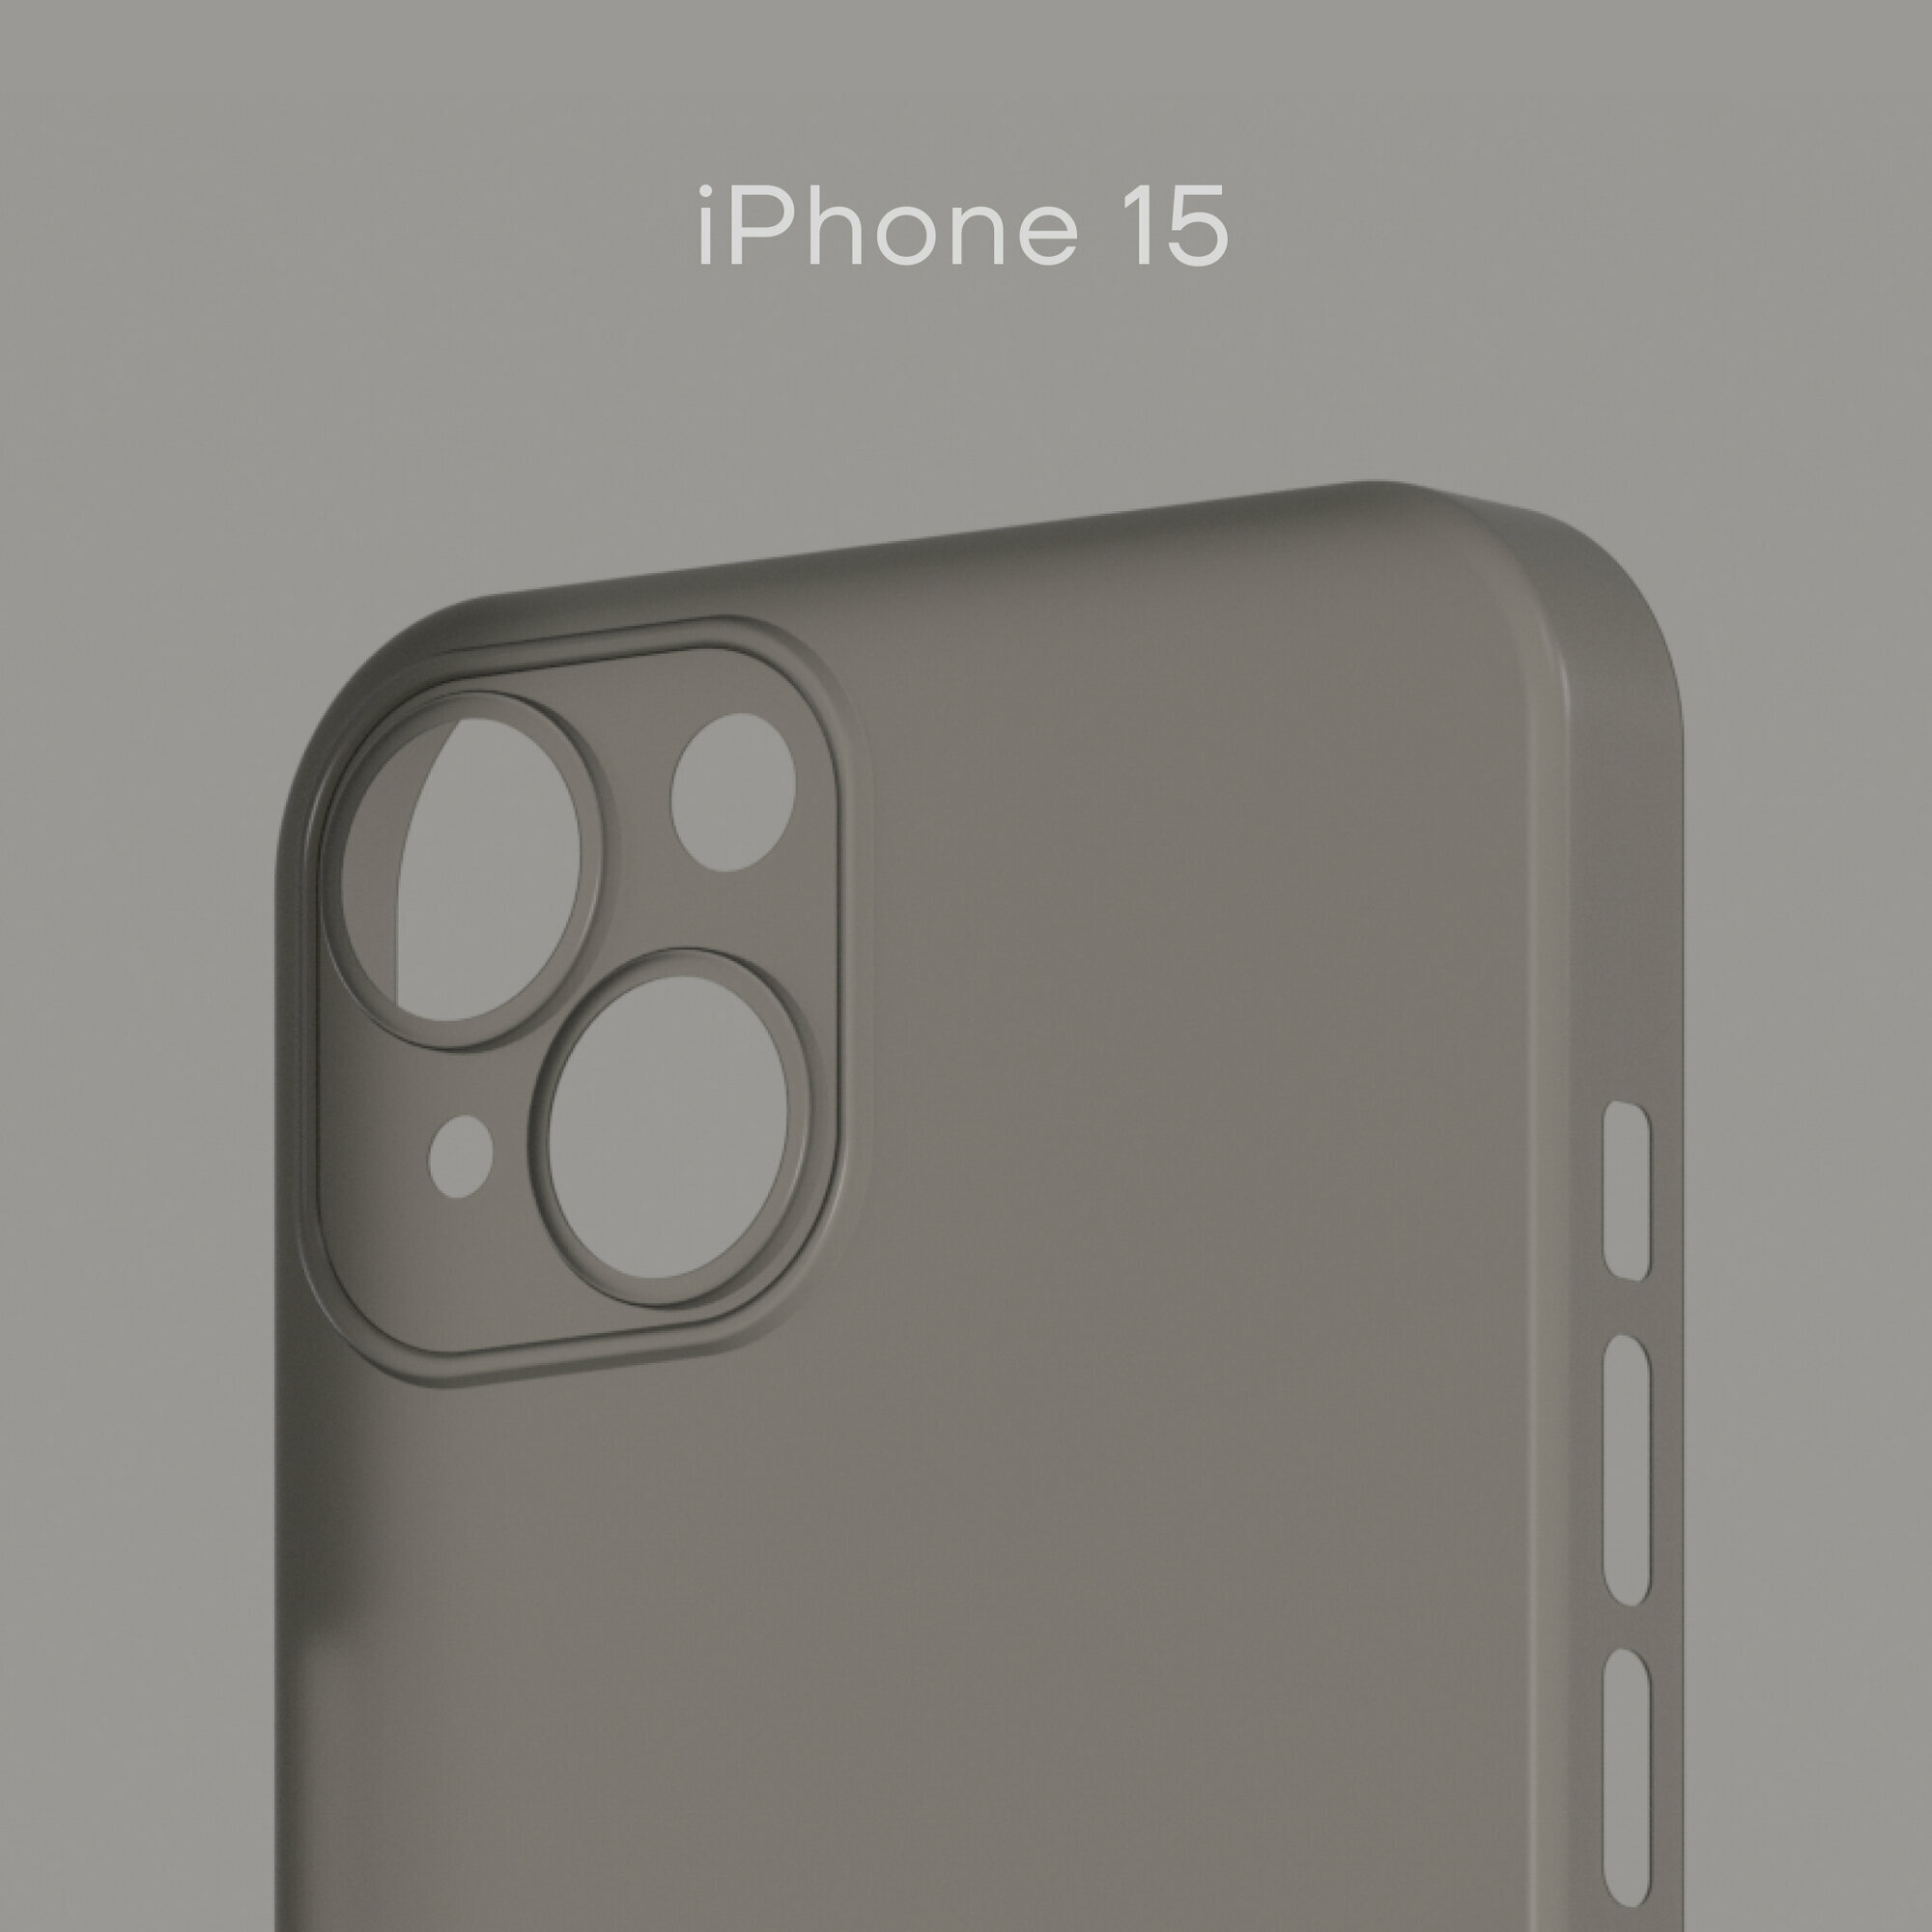 Ультратонкий чехол Уголок Air Case для iPhone 15 толщиной 0,3 мм, прозрачный, матовый, пластиковый